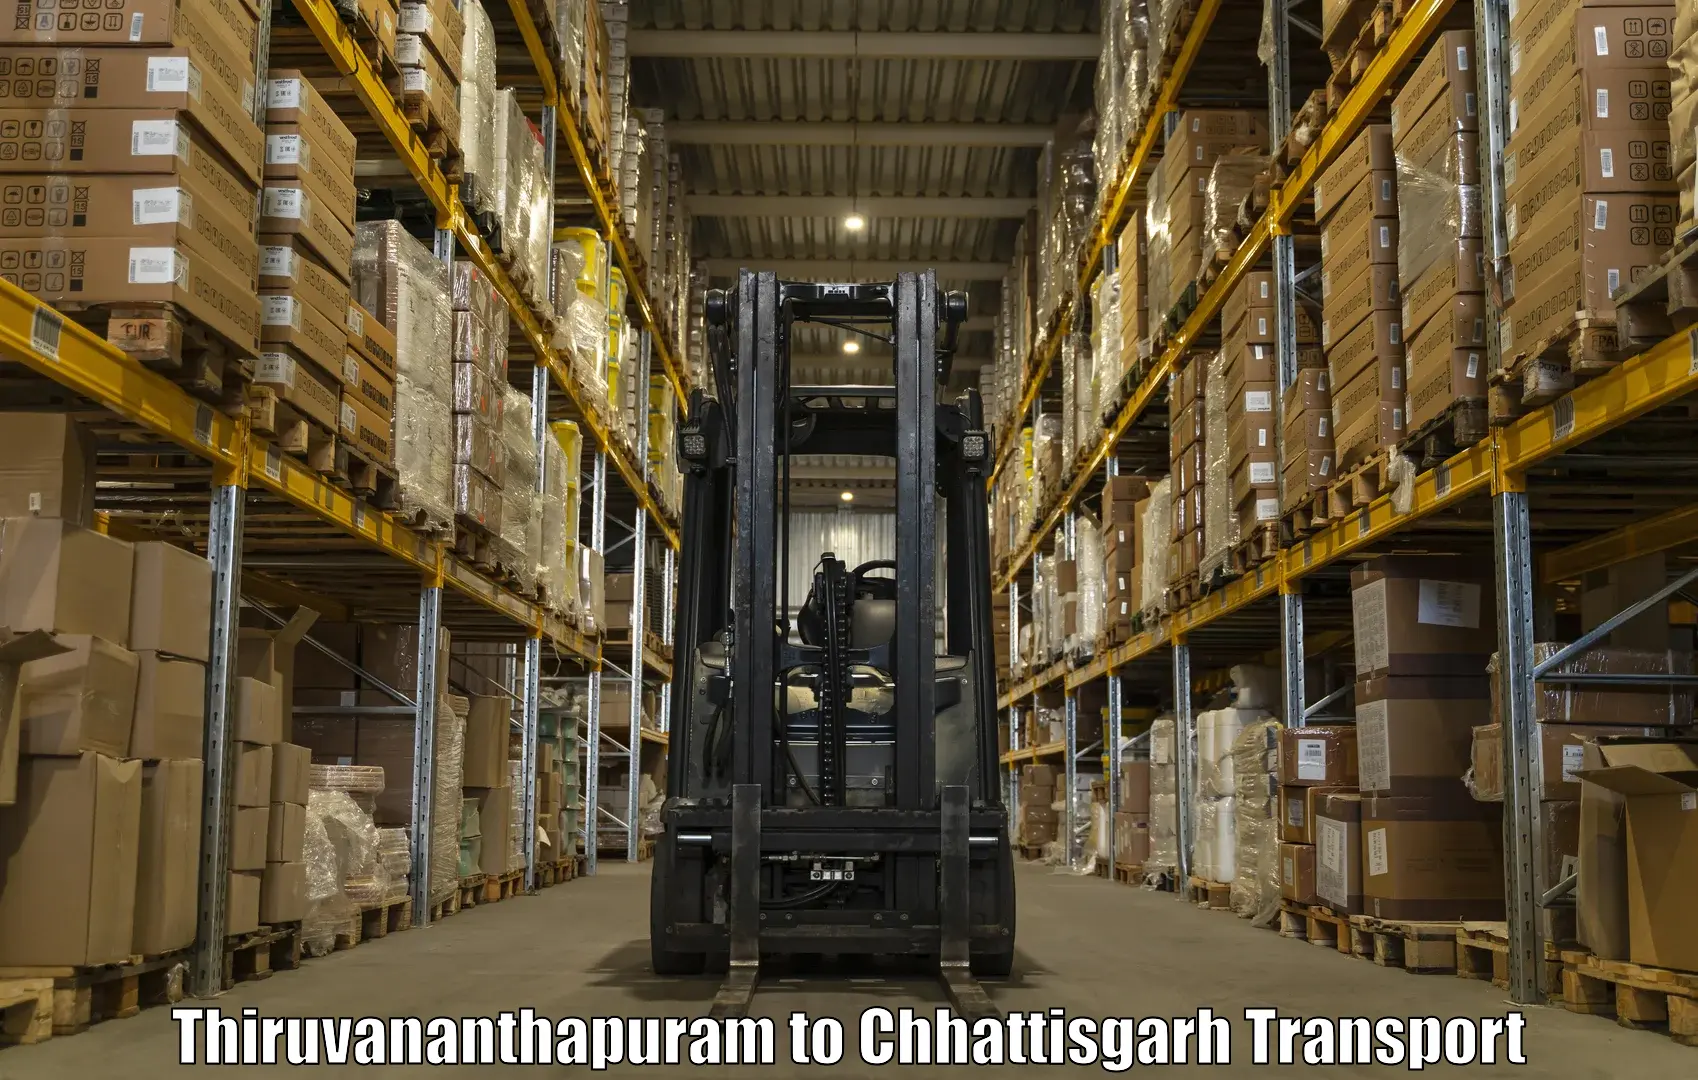 Truck transport companies in India Thiruvananthapuram to Manendragarh